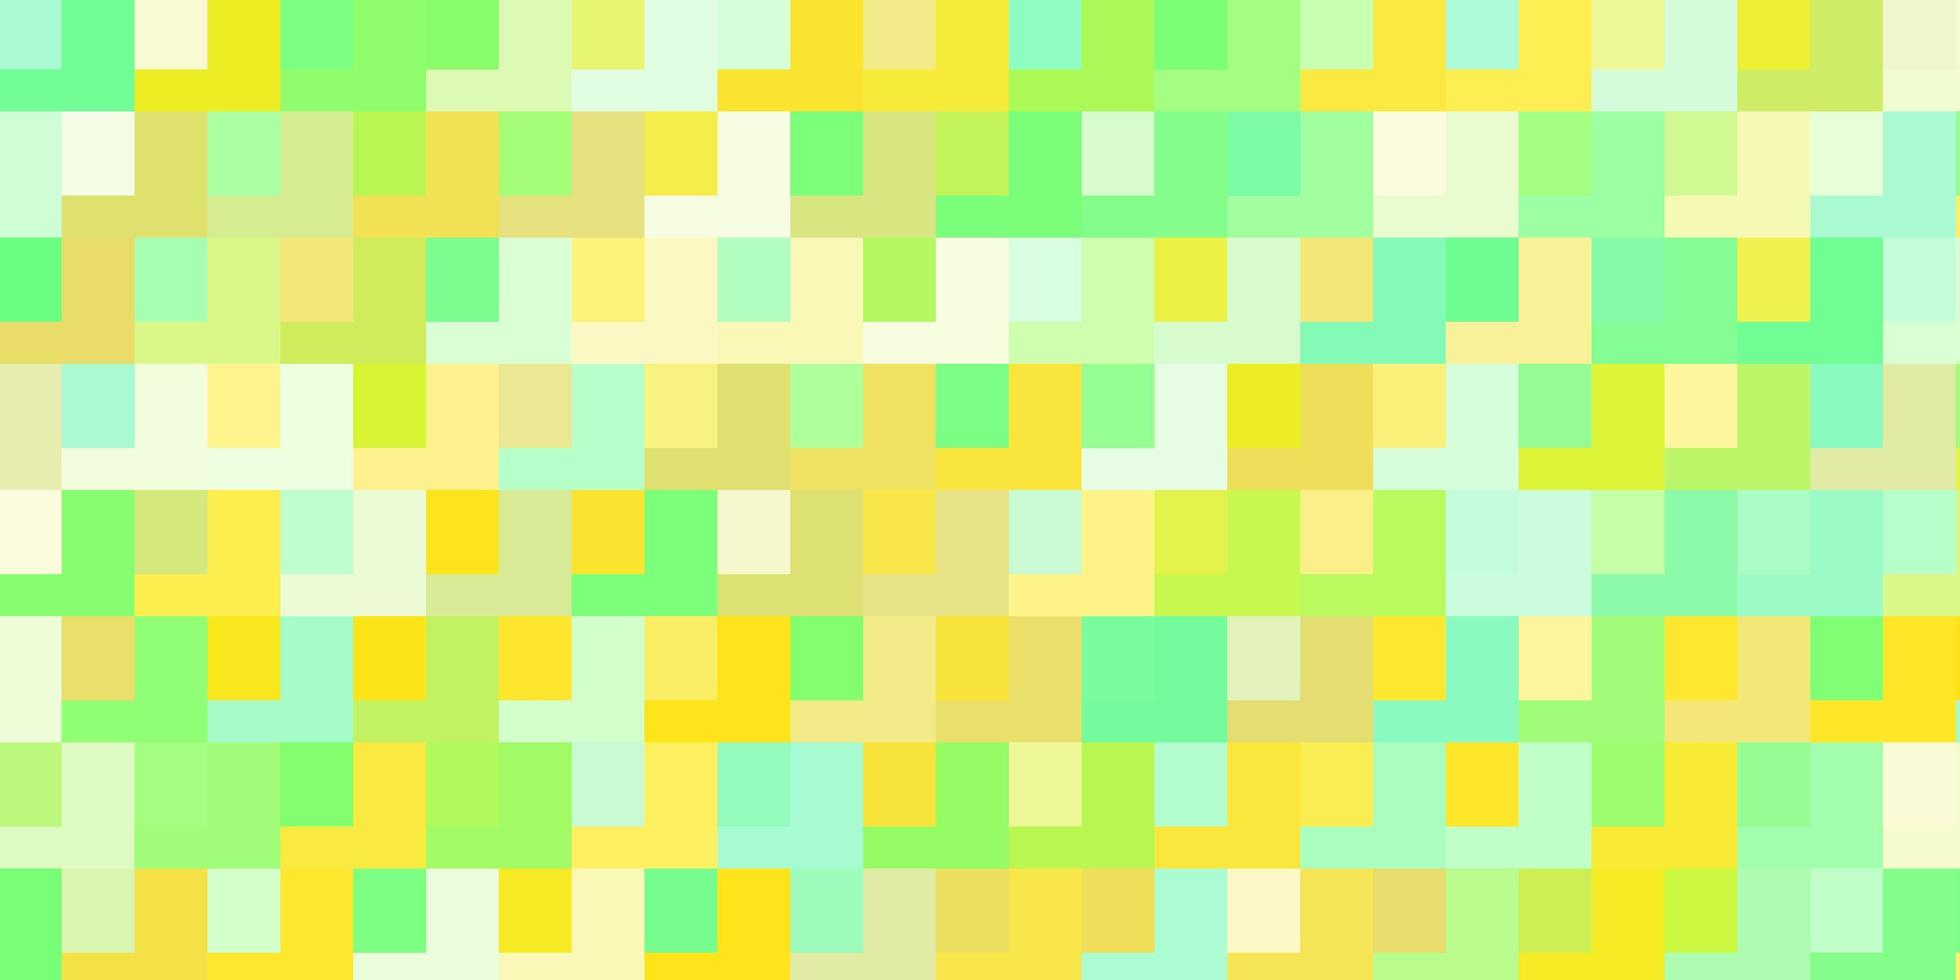 fond de vecteur vert clair et jaune avec des rectangles. rectangles avec dégradé coloré sur fond abstrait. modèle pour les téléphones portables.